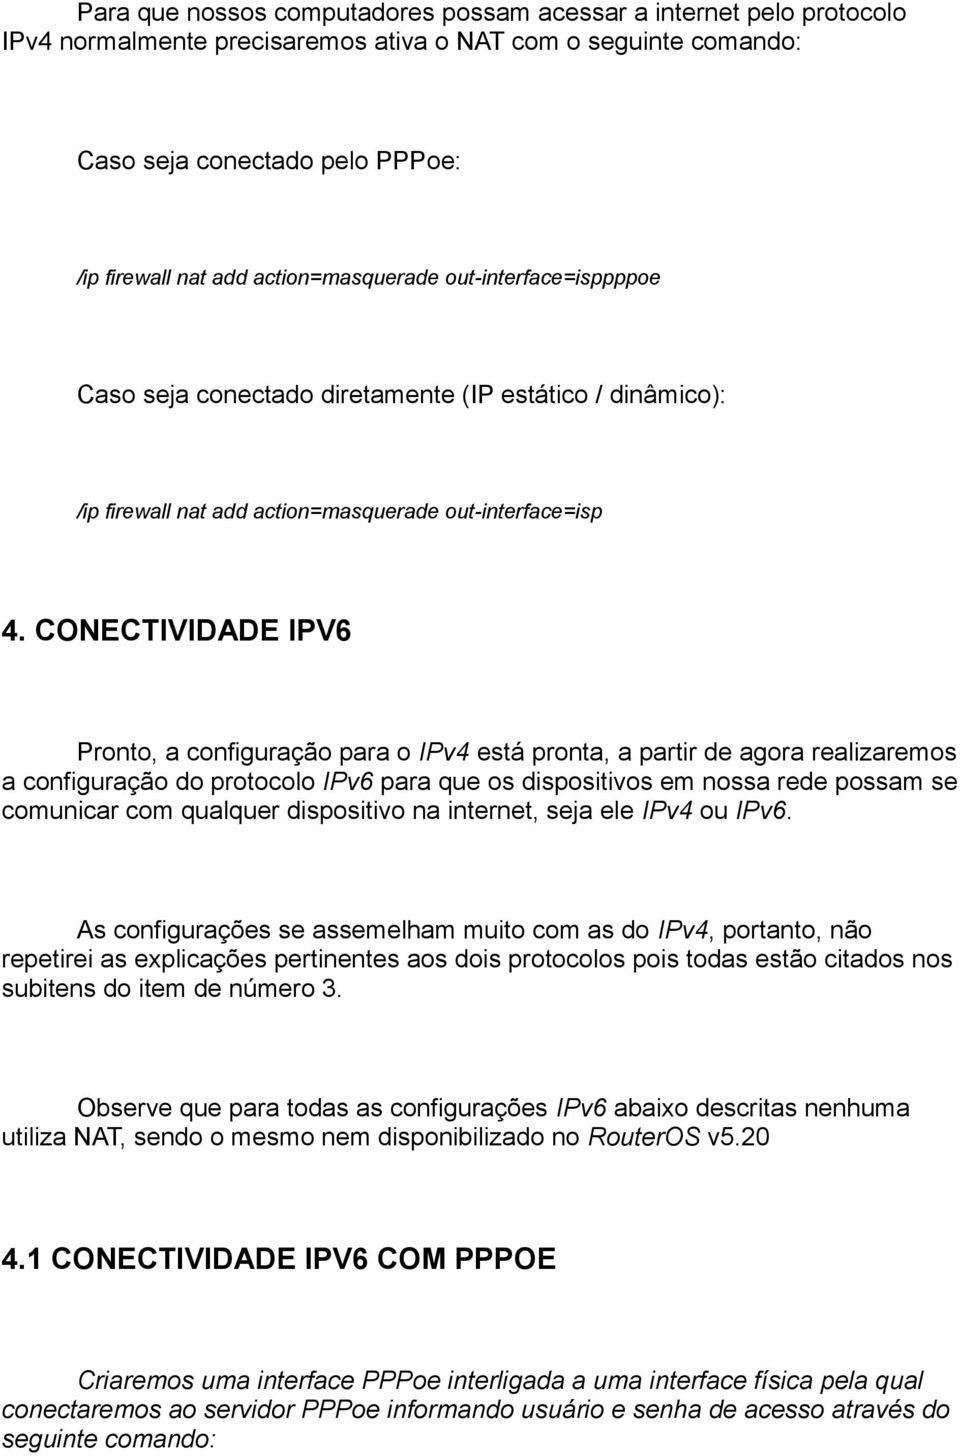 CONECTIVIDADE IPV6 Pronto, a configuração para o IPv4 está pronta, a partir de agora realizaremos a configuração do protocolo IPv6 para que os dispositivos em nossa rede possam se comunicar com